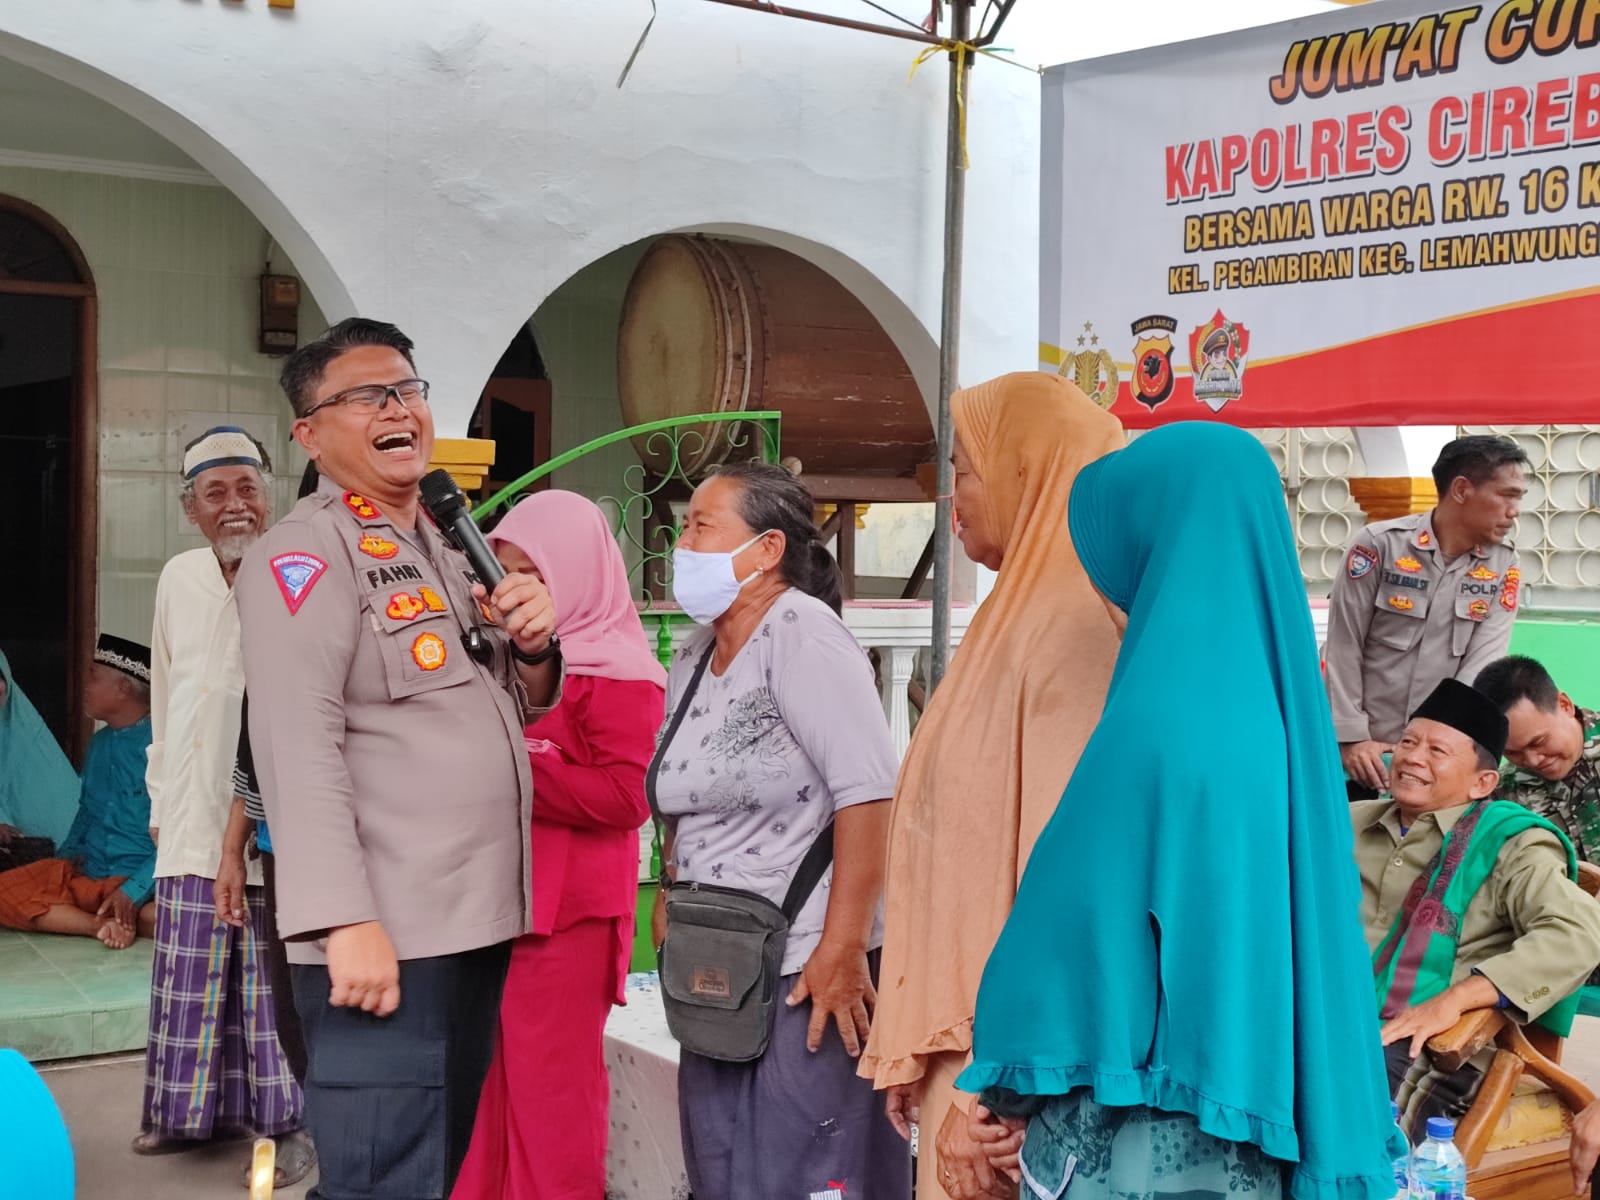 Kapolres Cirebon Kota Gelar Jumat Curhat, Ingin Wujudkan Polri yang Dekat dan Bersahabat